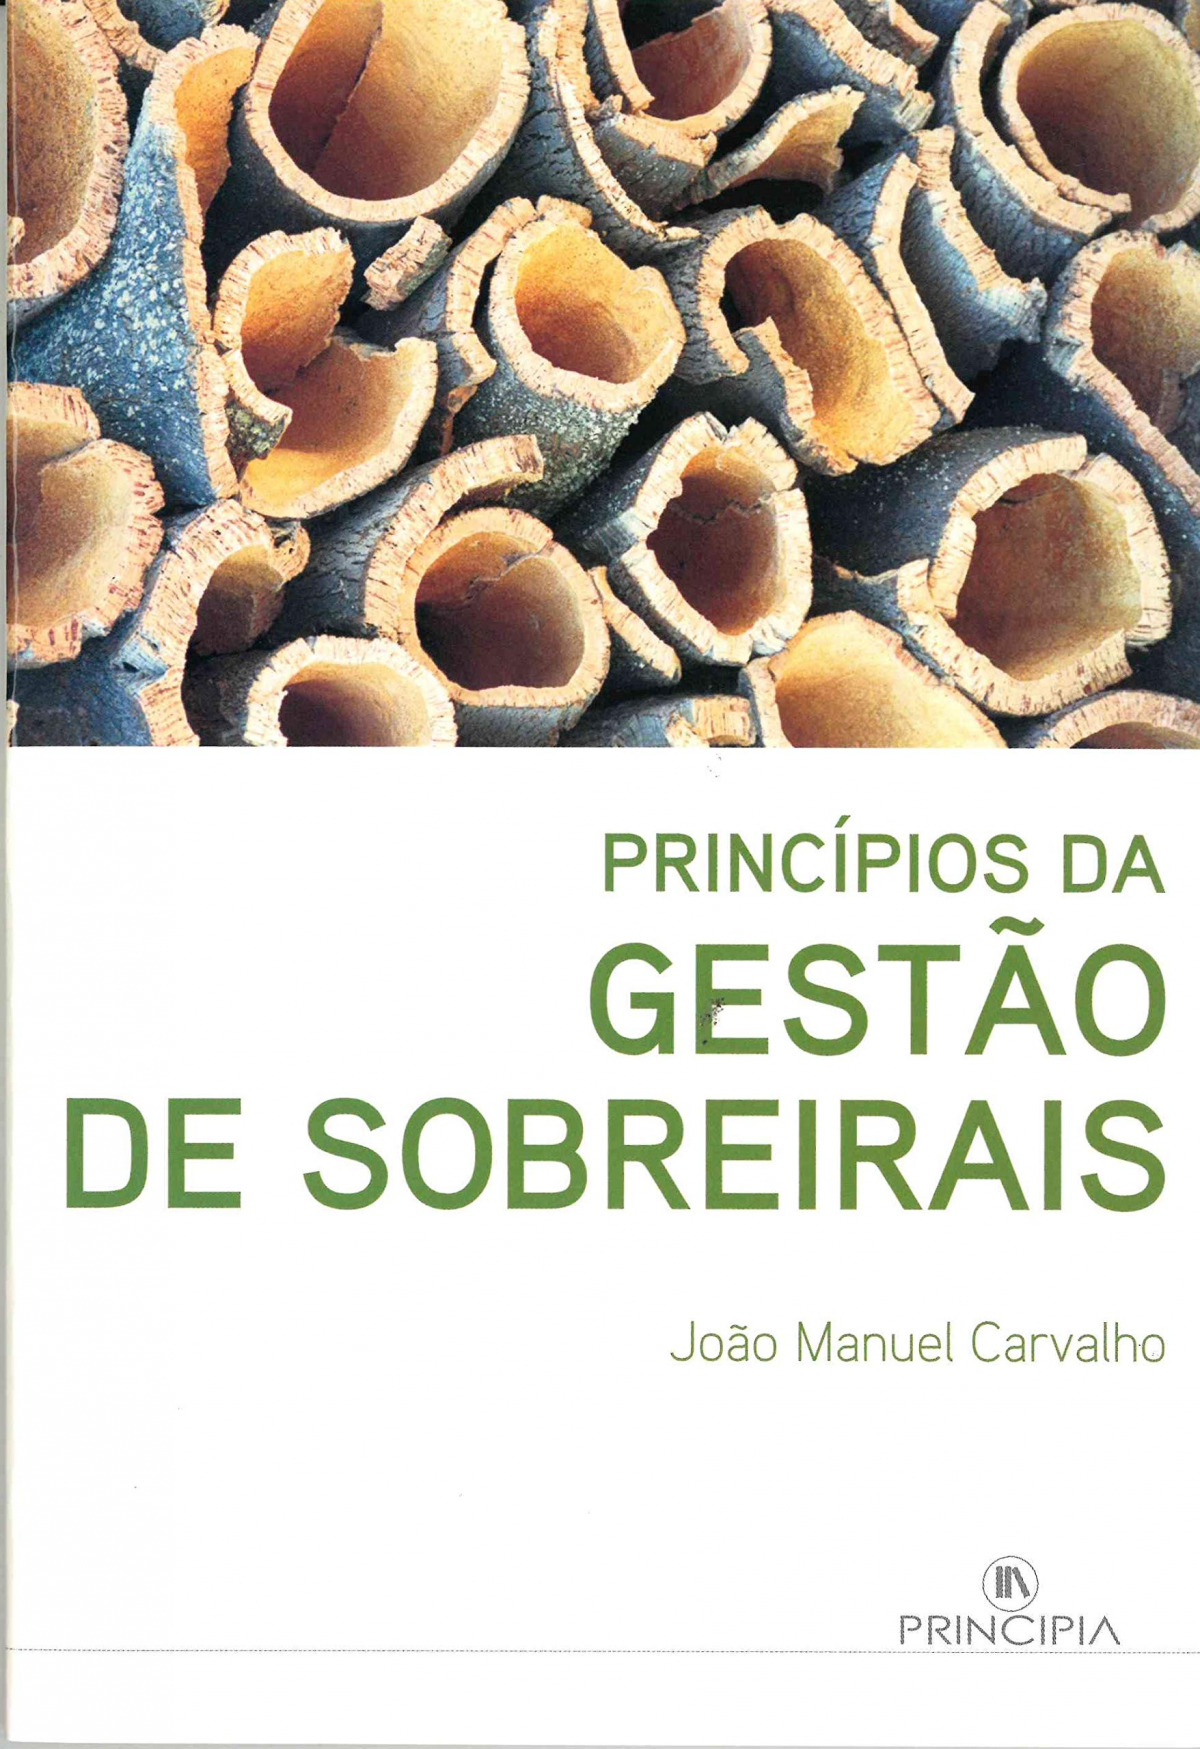 Principios da Gestao dos Sobreirais - João Manuel Carvalho